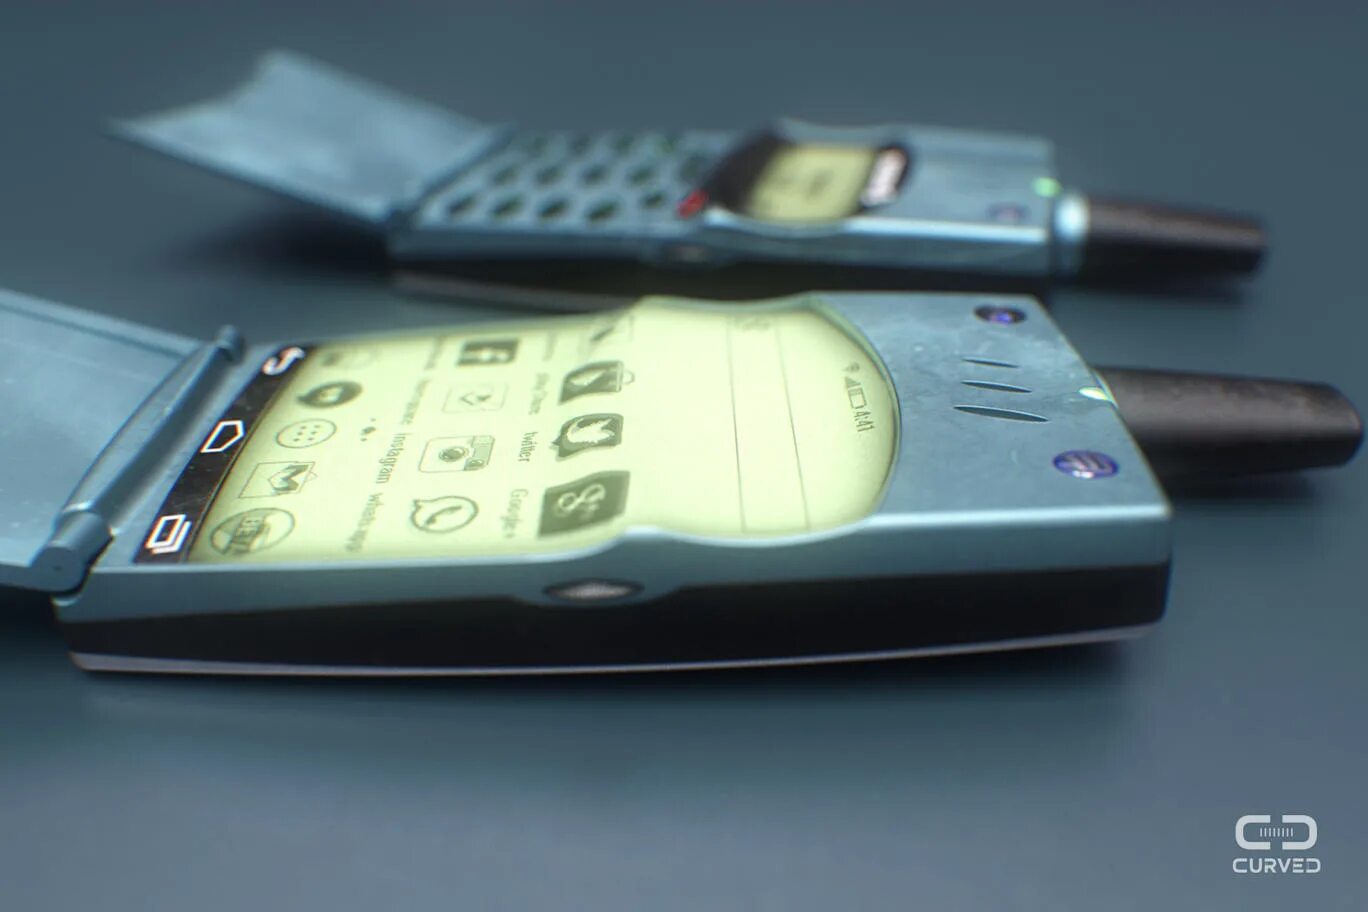 Старые новые мобильные телефоны. Ericsson t28. Sony Ericsson t28s. Nokia 3310 Ericsson. Nokia 3310 & Ericsson t28s.